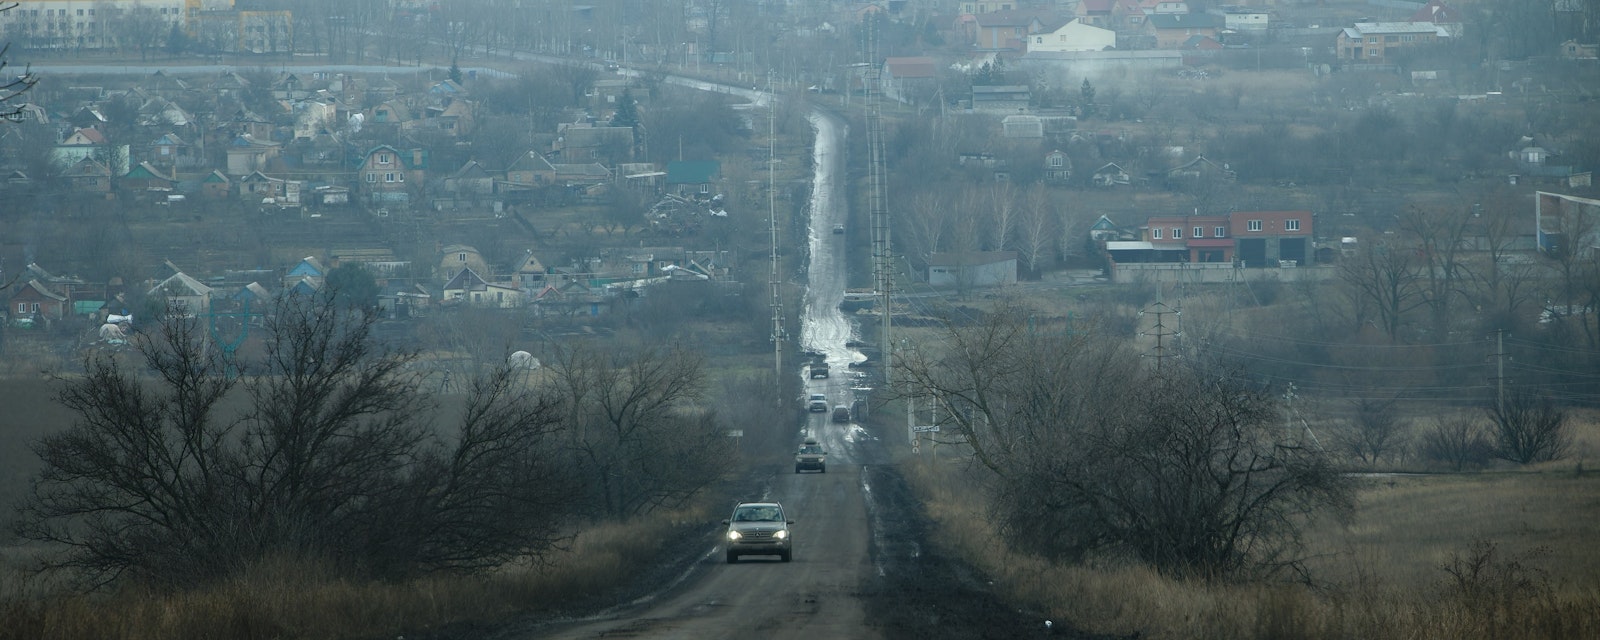 Bakhmut,,Ukraine,Jan,19,2023,Road,To,The,Bakhmut,,The